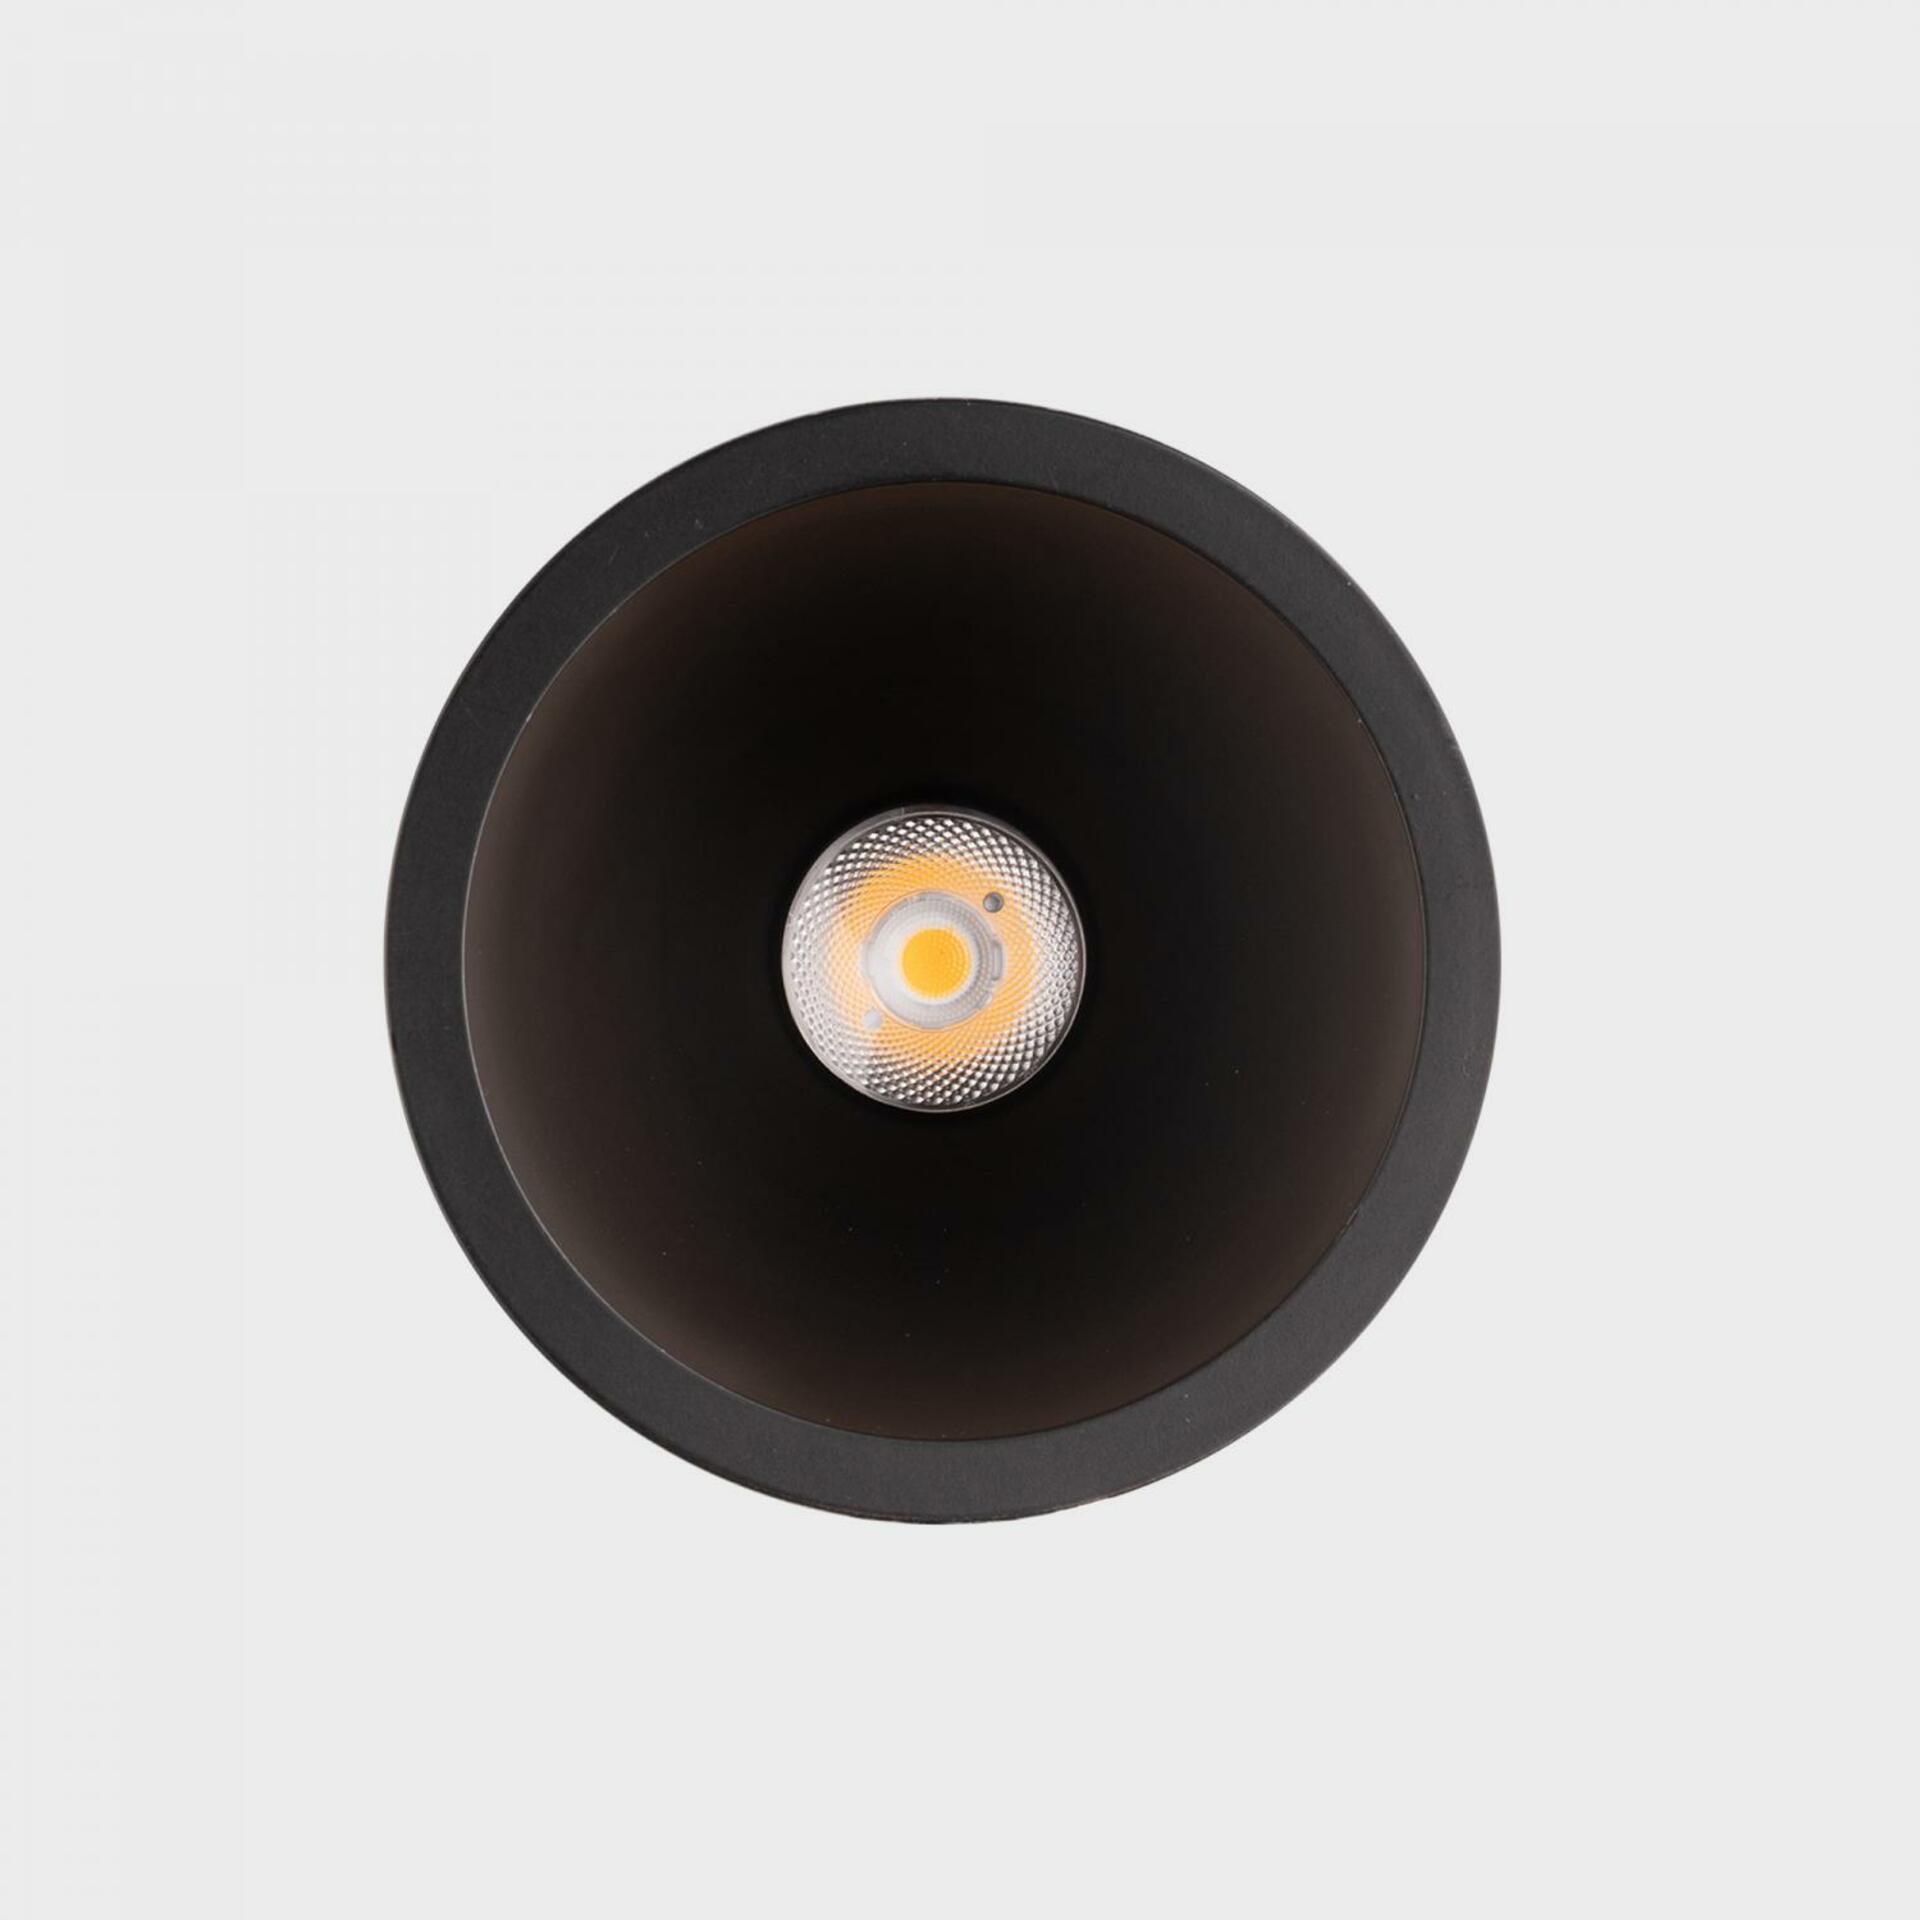 KOHL LIGHTING KOHL-Lighting NOON zapuštěné svítidlo s rámečkem pr.93 mm černá 38° 10 W  CRI 80 3000K PUSH